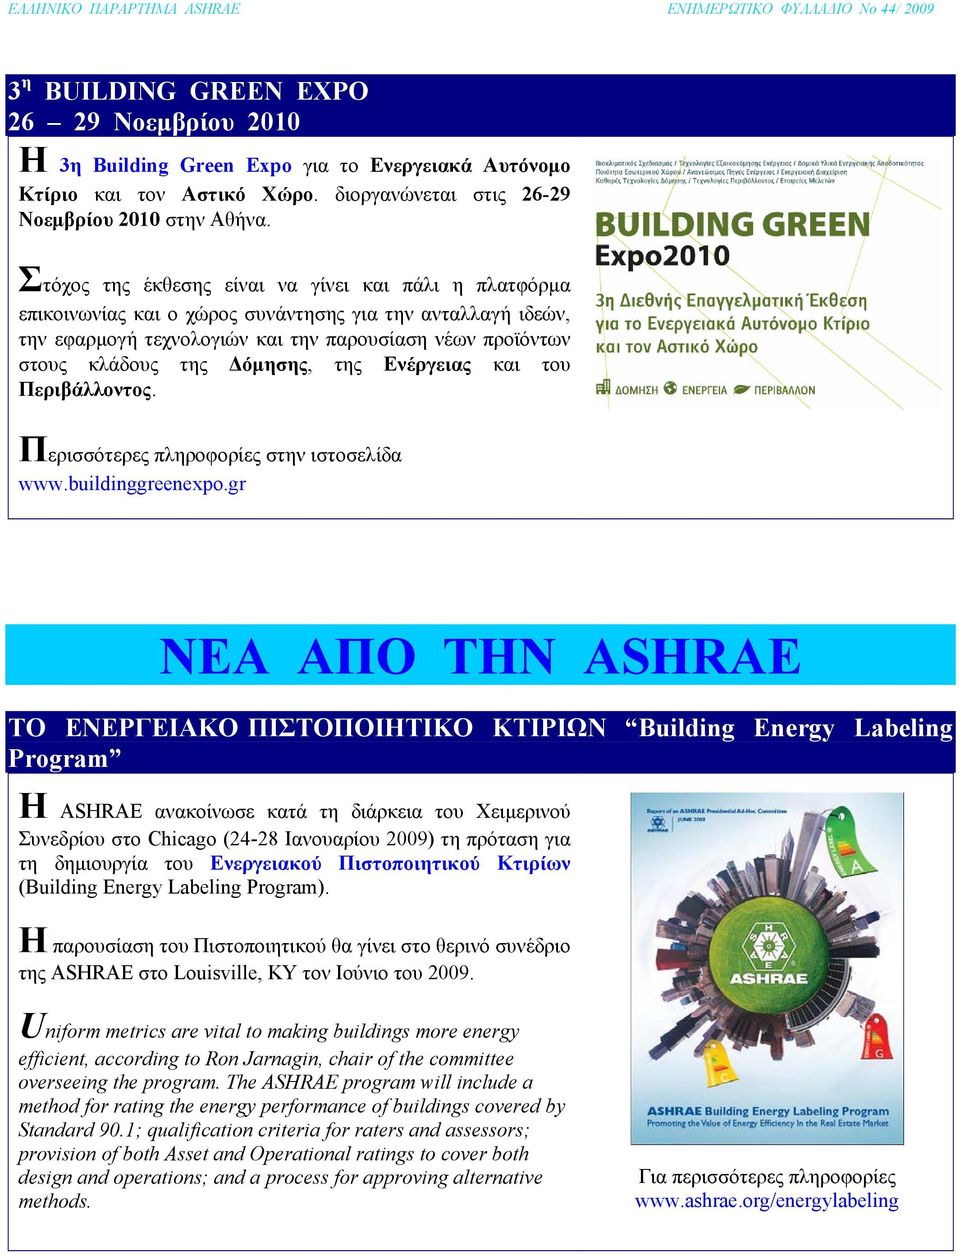 Δόμησης, της Ενέργειας και του Περιβάλλοντος. Περισσότερες πληροφορίες στην ιστοσελίδα www.buildinggreenexpo.